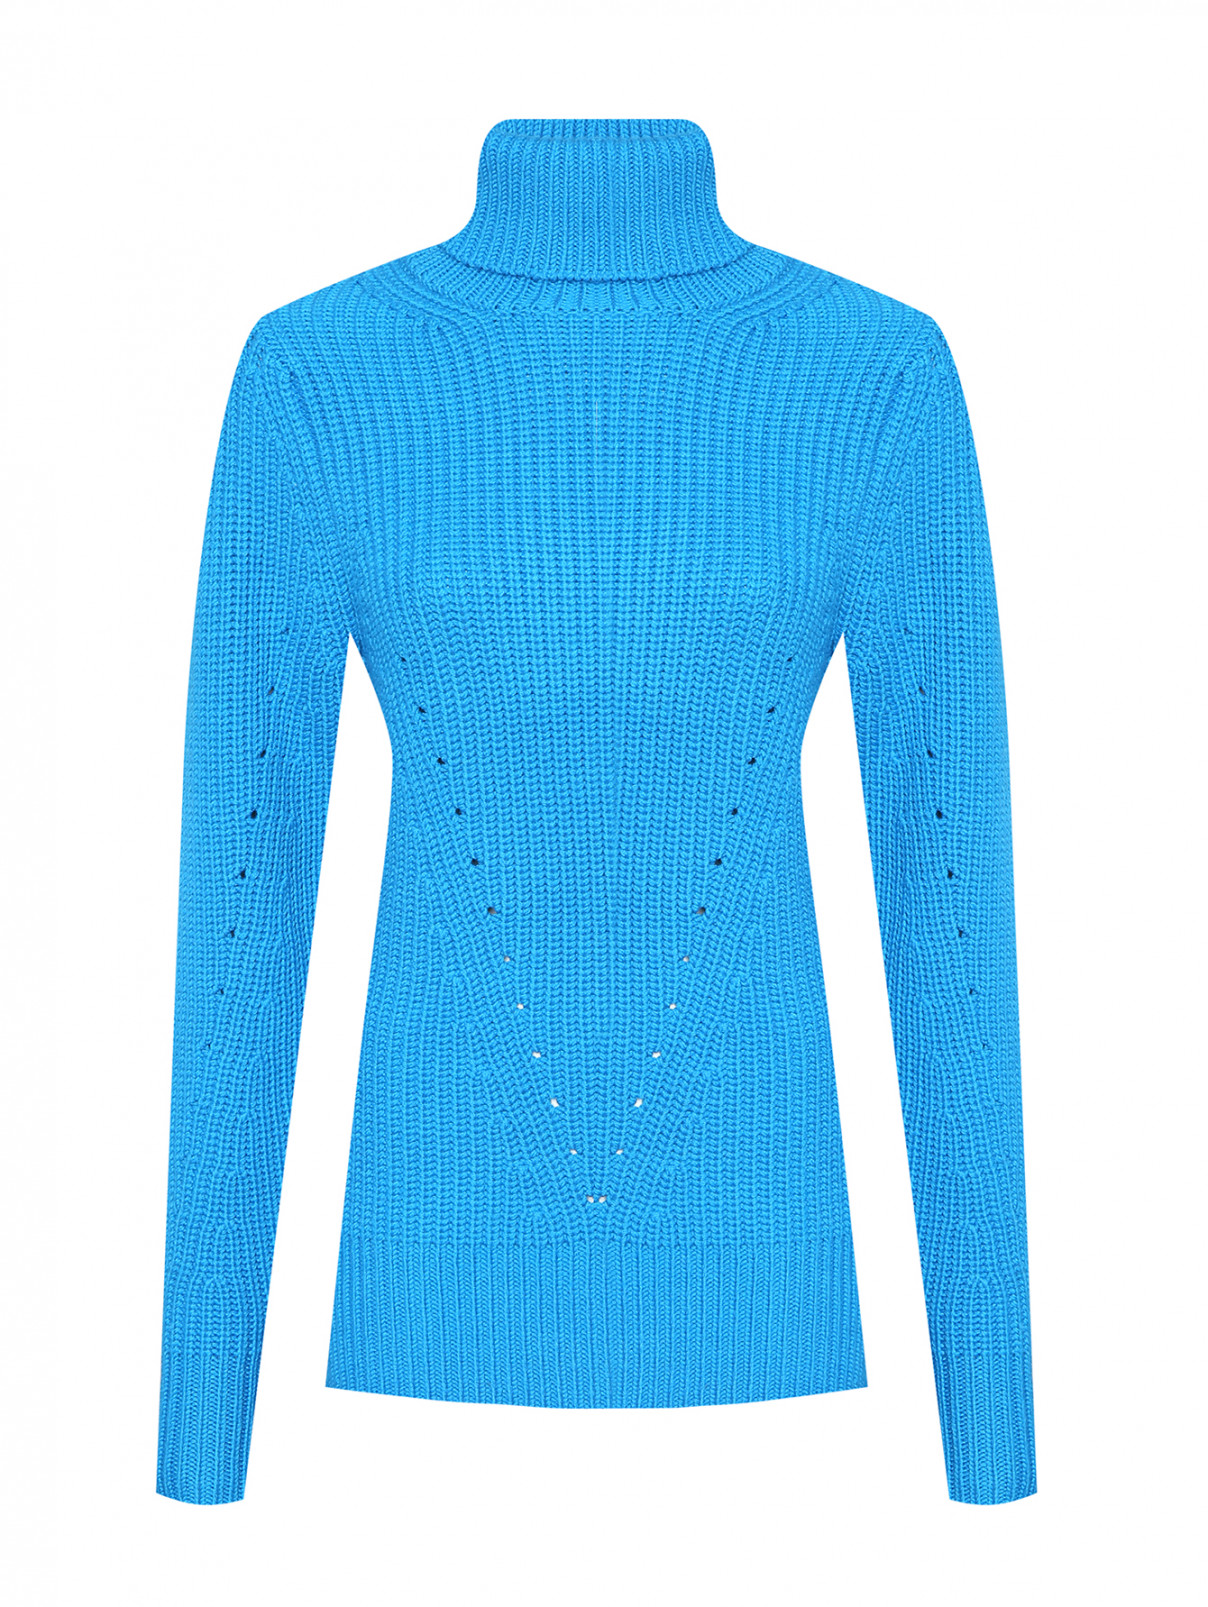 Однотонный свитер из шерсти Barbara Bui  –  Общий вид  – Цвет:  Синий